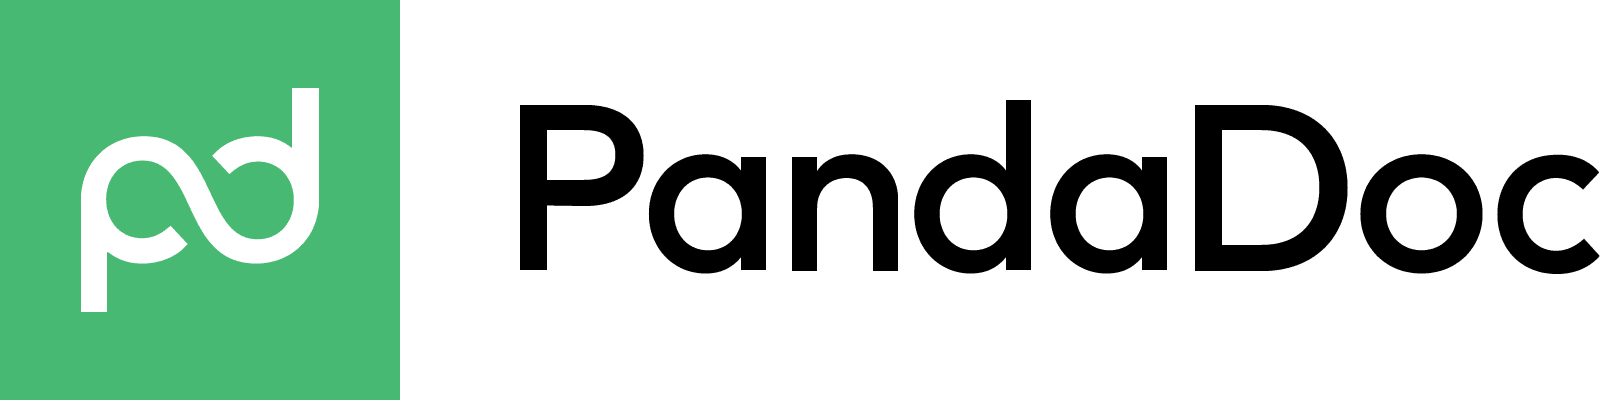 PandaDoc_Logo_PNG